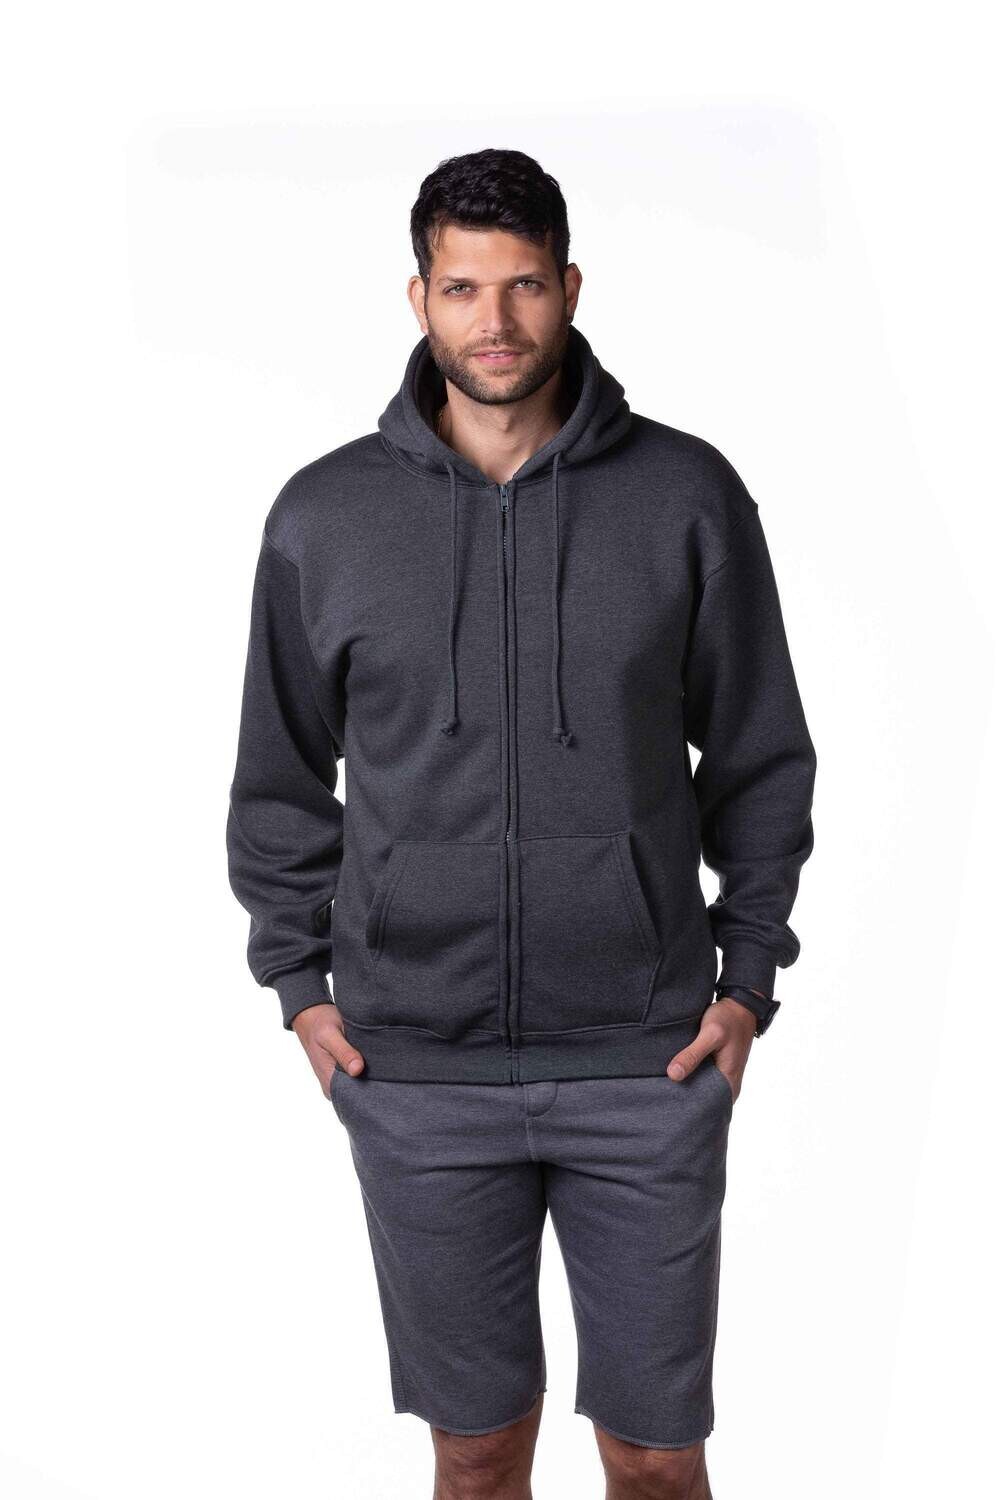 Plus size hoodie Unisex Heavyweight Full Zip Hooded Sweatshirt Made in